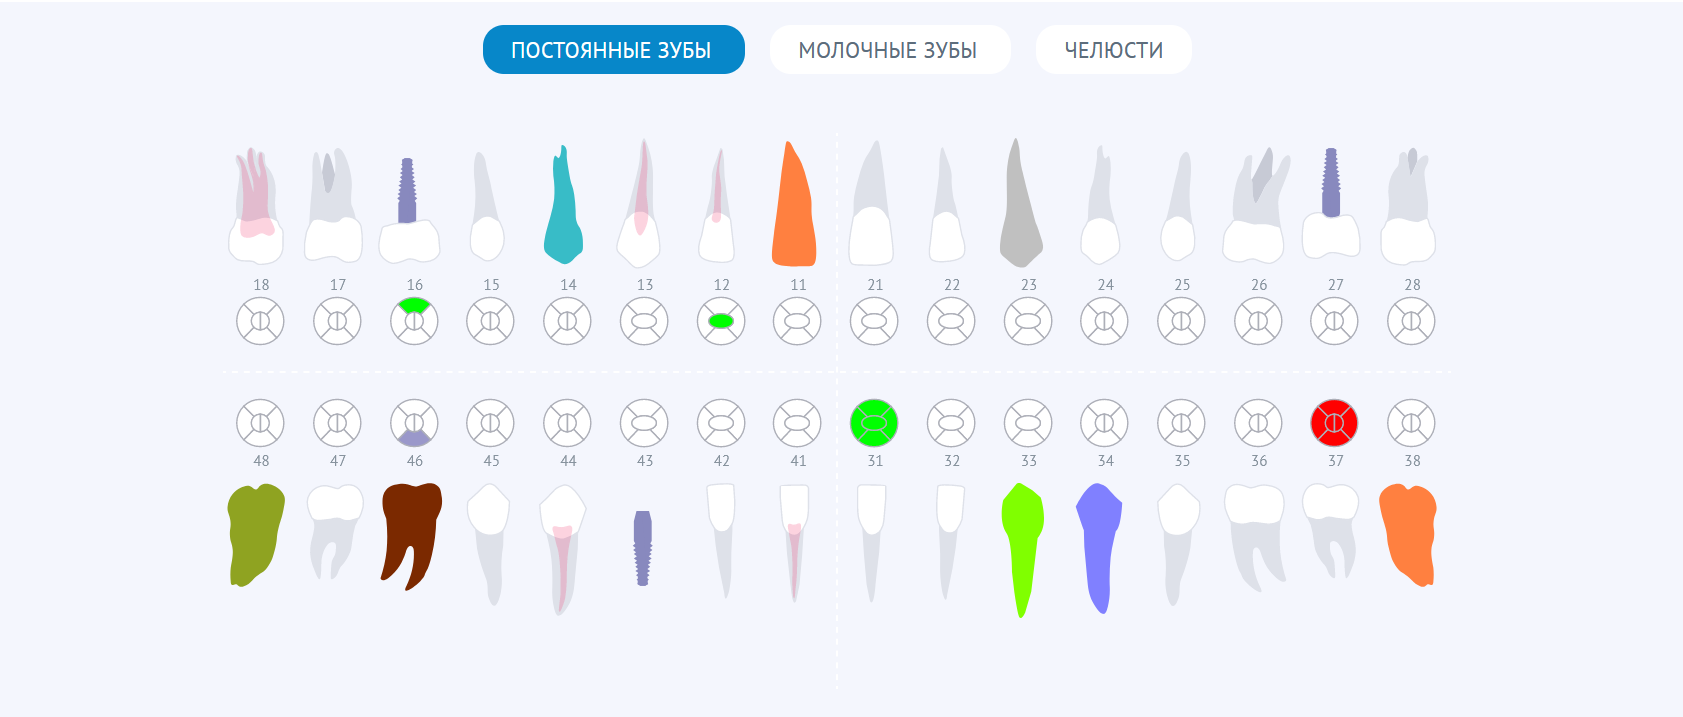 зубная формула постоянные зубы